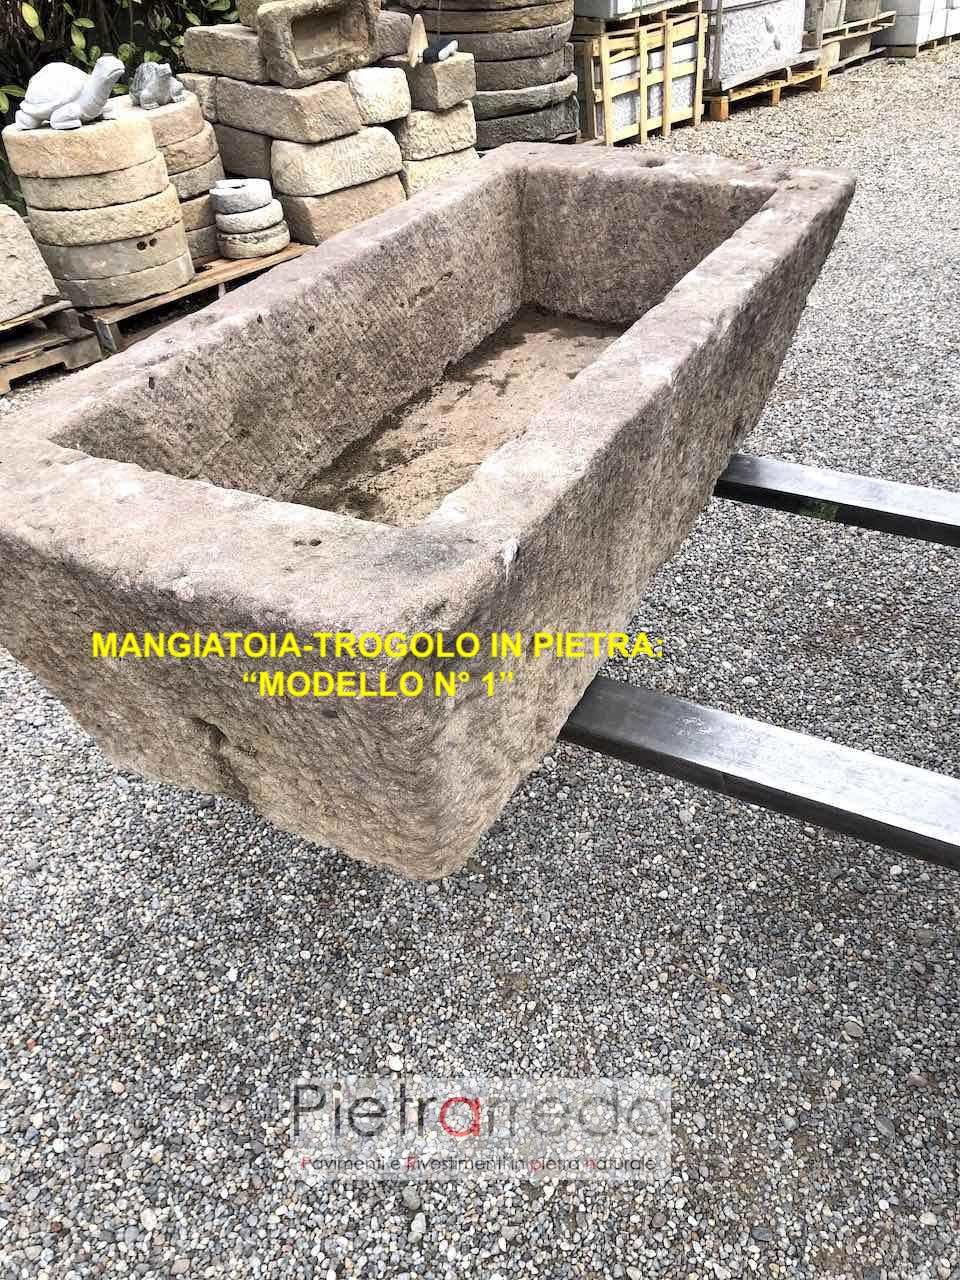 vecchia vasca in pietra mangiatoia trogolo sasso abbeveratoio grande da recupero antico pietrarredo milano